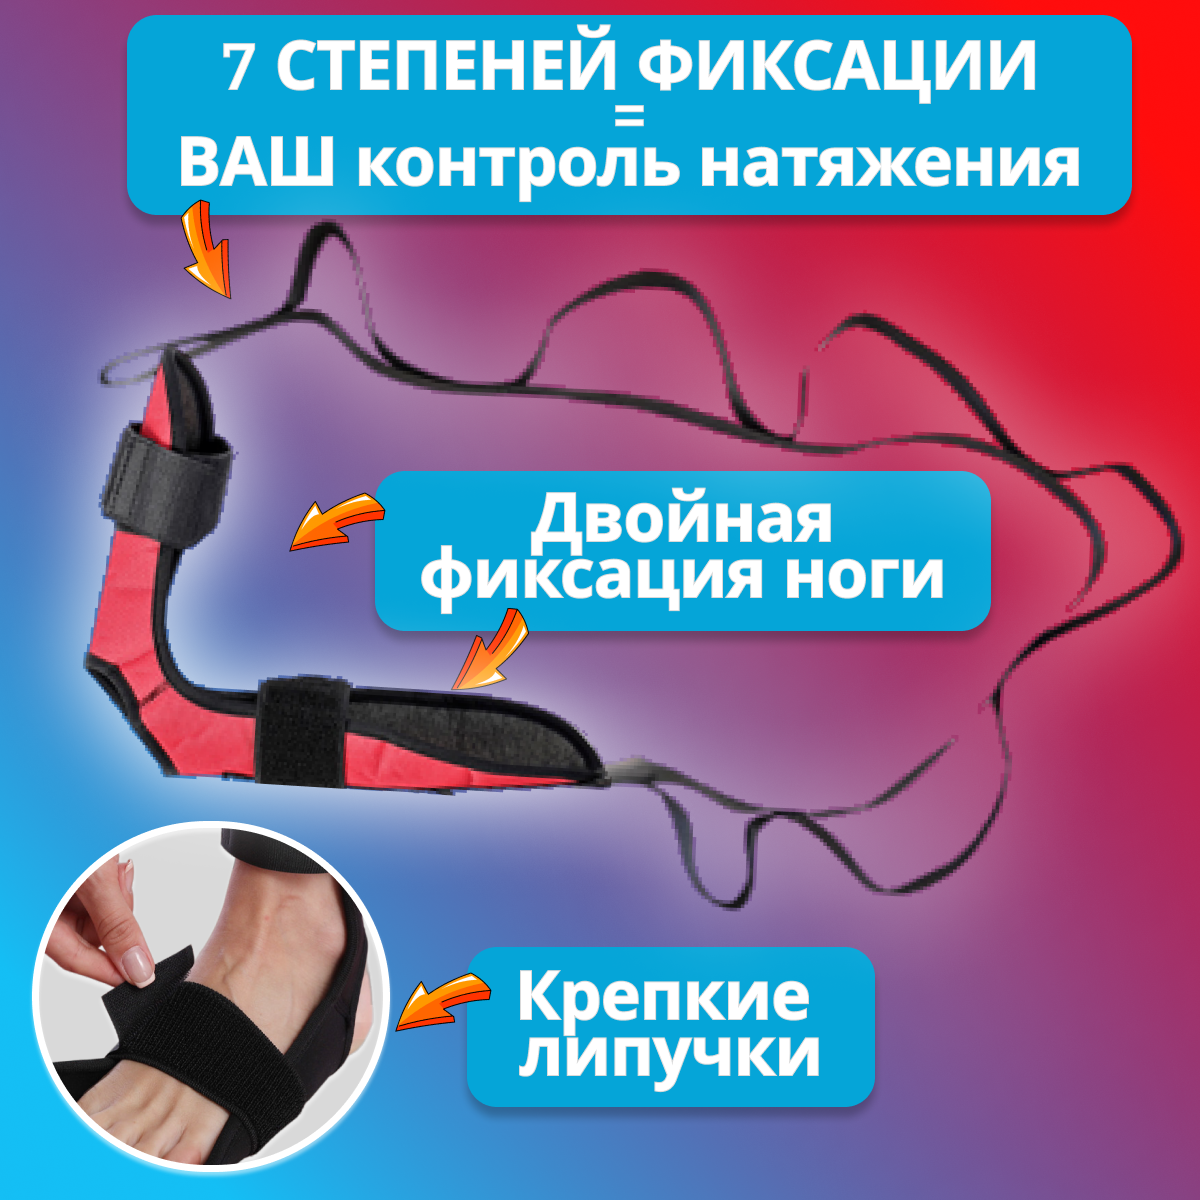 Ремень - экспандер для голеностопа домашний фитнес тренажер для растяжки мышц ног и спины лента реабилитация после травм и для йоги